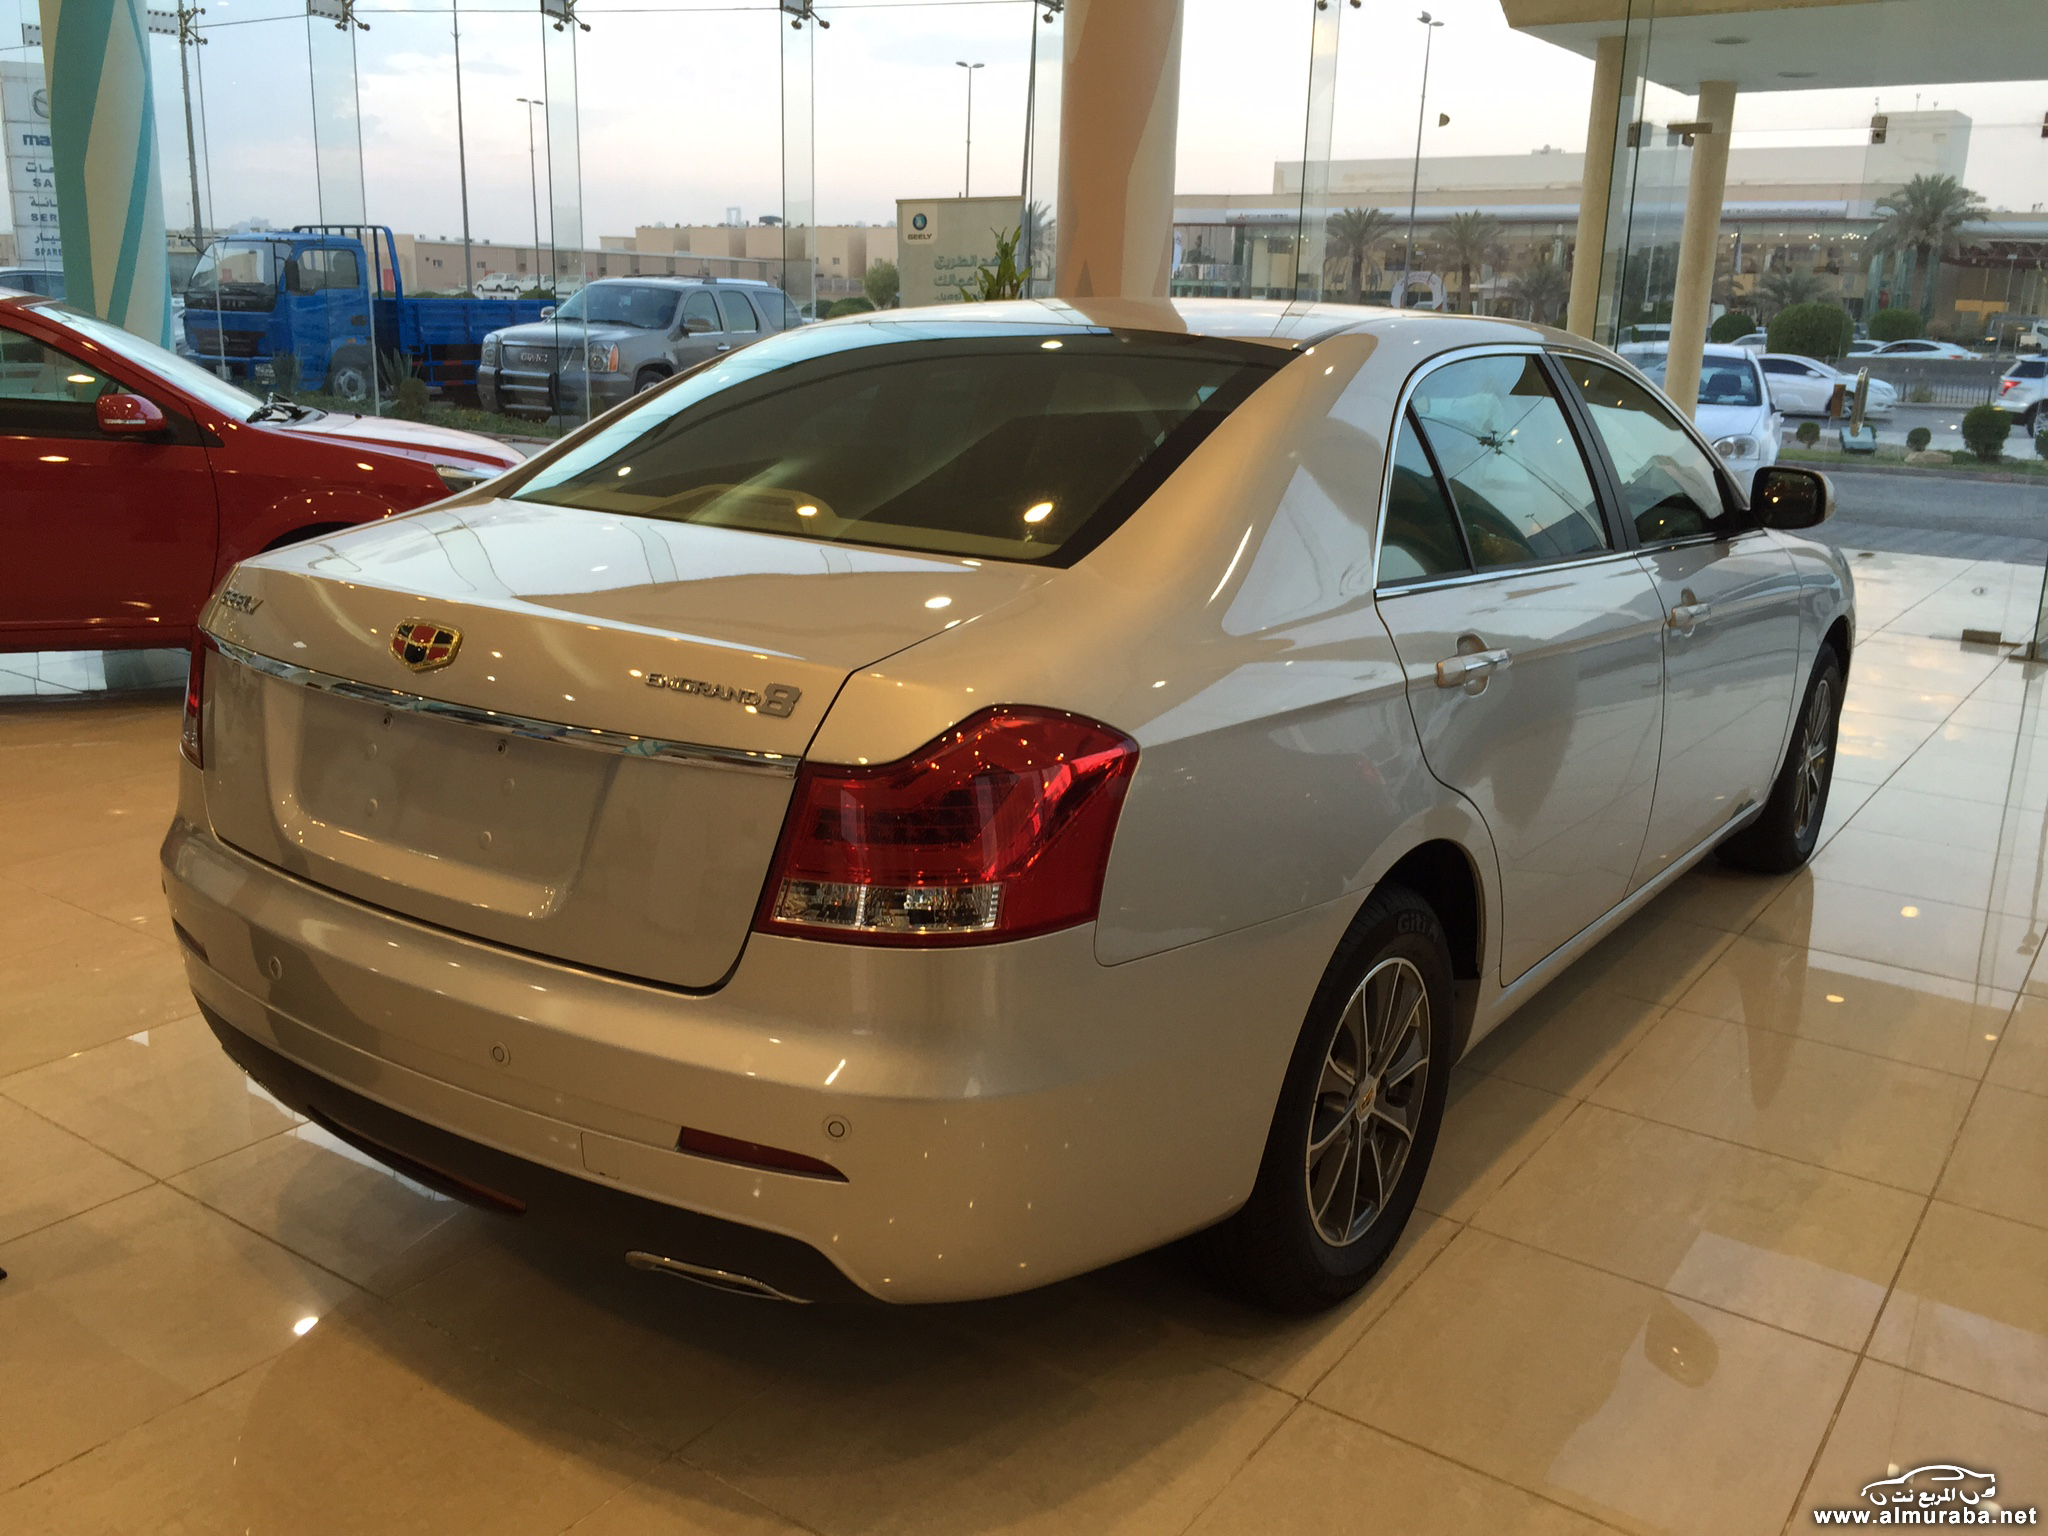 كم سعر سيارة جيلي 2015 للبيع في السعودي ومن أين تشتريها؟ 3